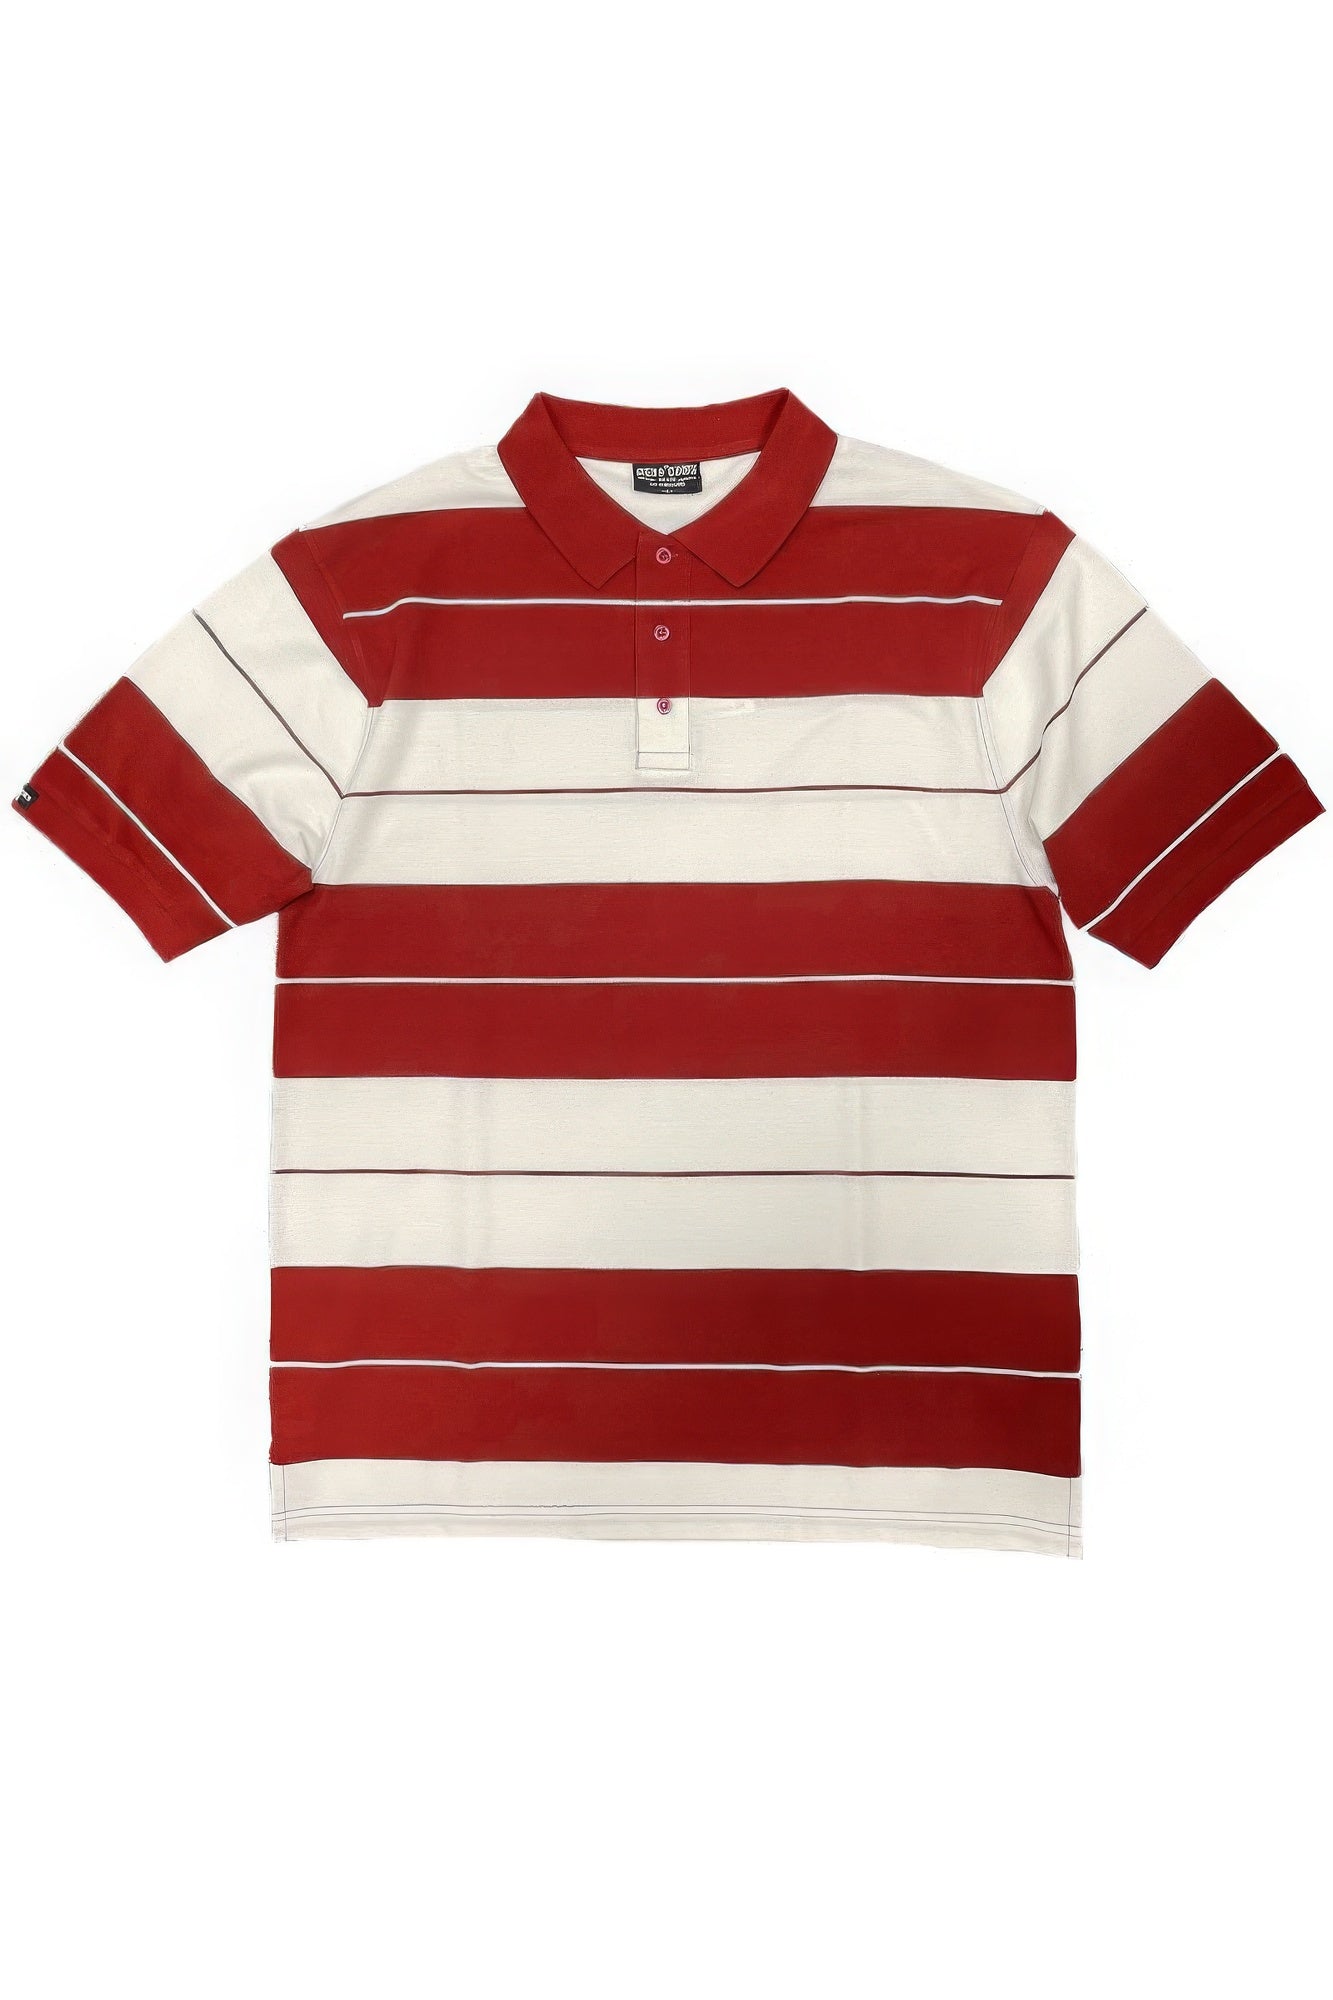 - Old School Pique Polo Shirt - mens polo shirt at TFC&H Co.